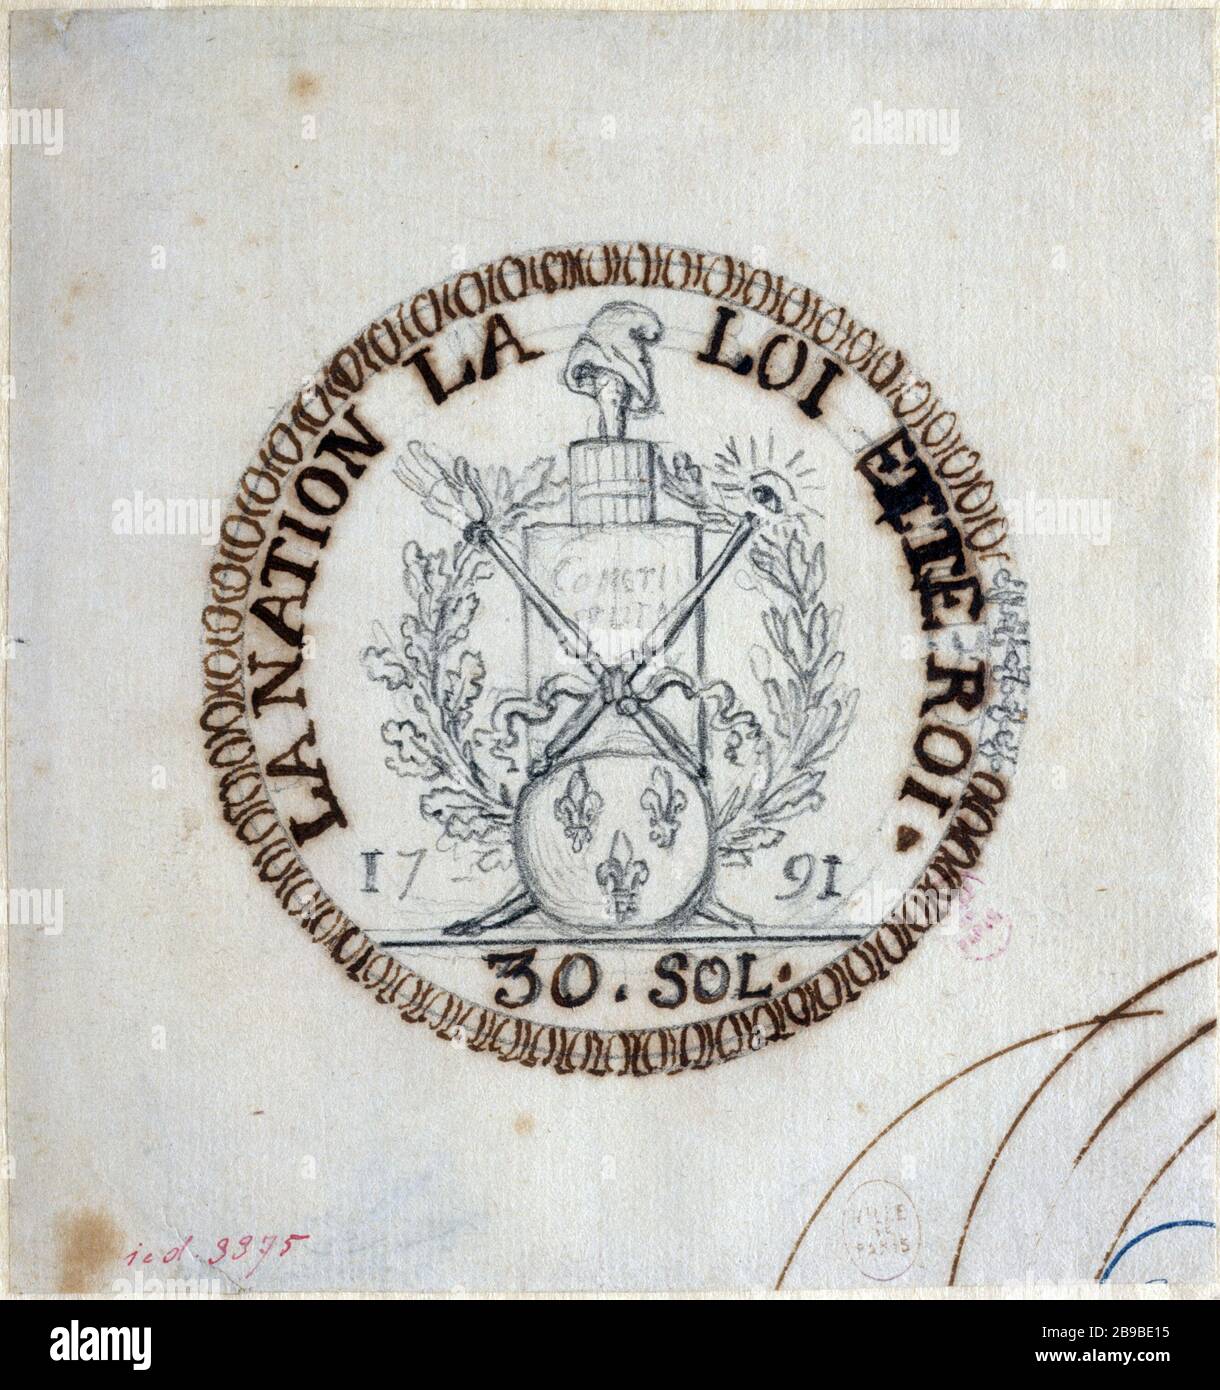 PROGETTO MONETA 30 PIANI Augustin Dupre (1748-1833). "Projet de monnaie de 30 sols de 1791". Parigi, musée Carnavalet. Foto Stock